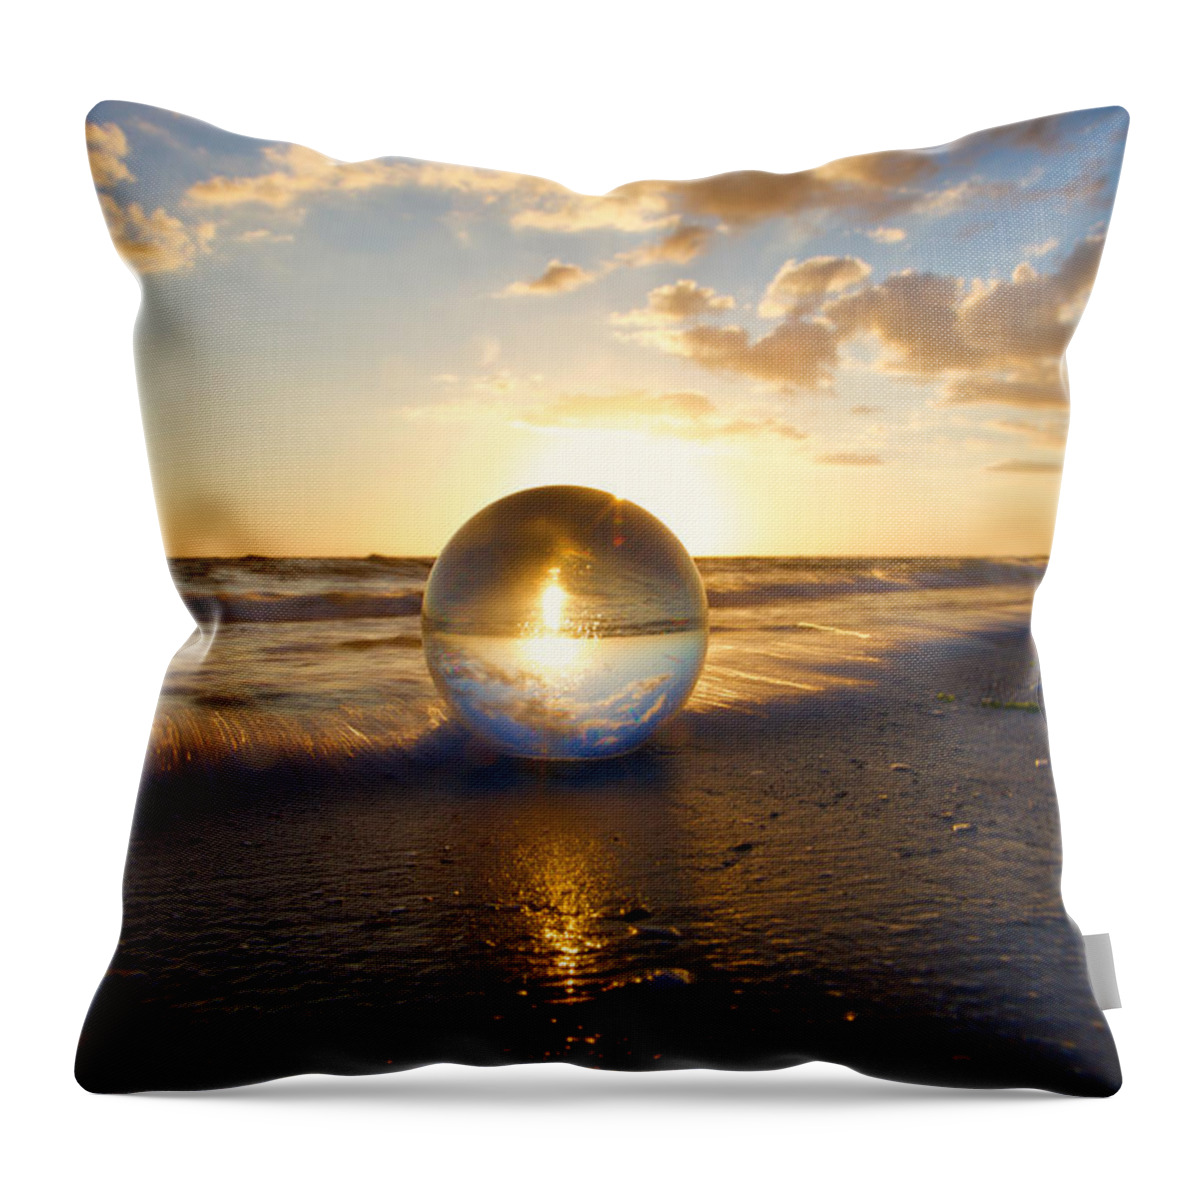 Nunweiler Throw Pillow featuring the photograph Beach Ball by Nunweiler Photography